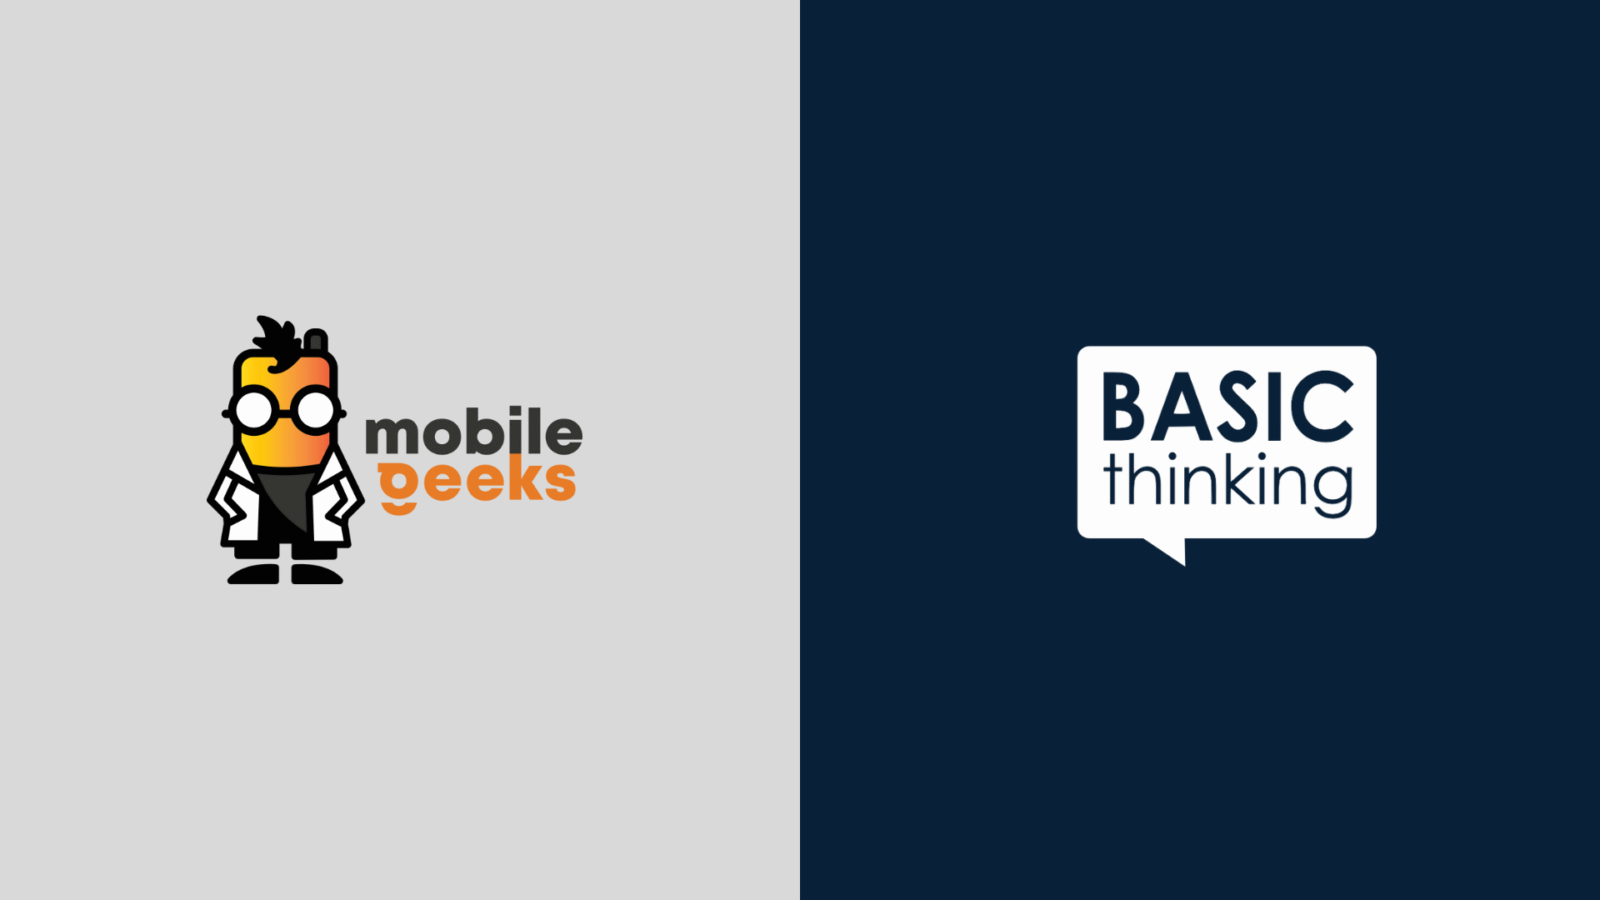 Mobile Geeks wird Teil der BASIC thinking-Familie